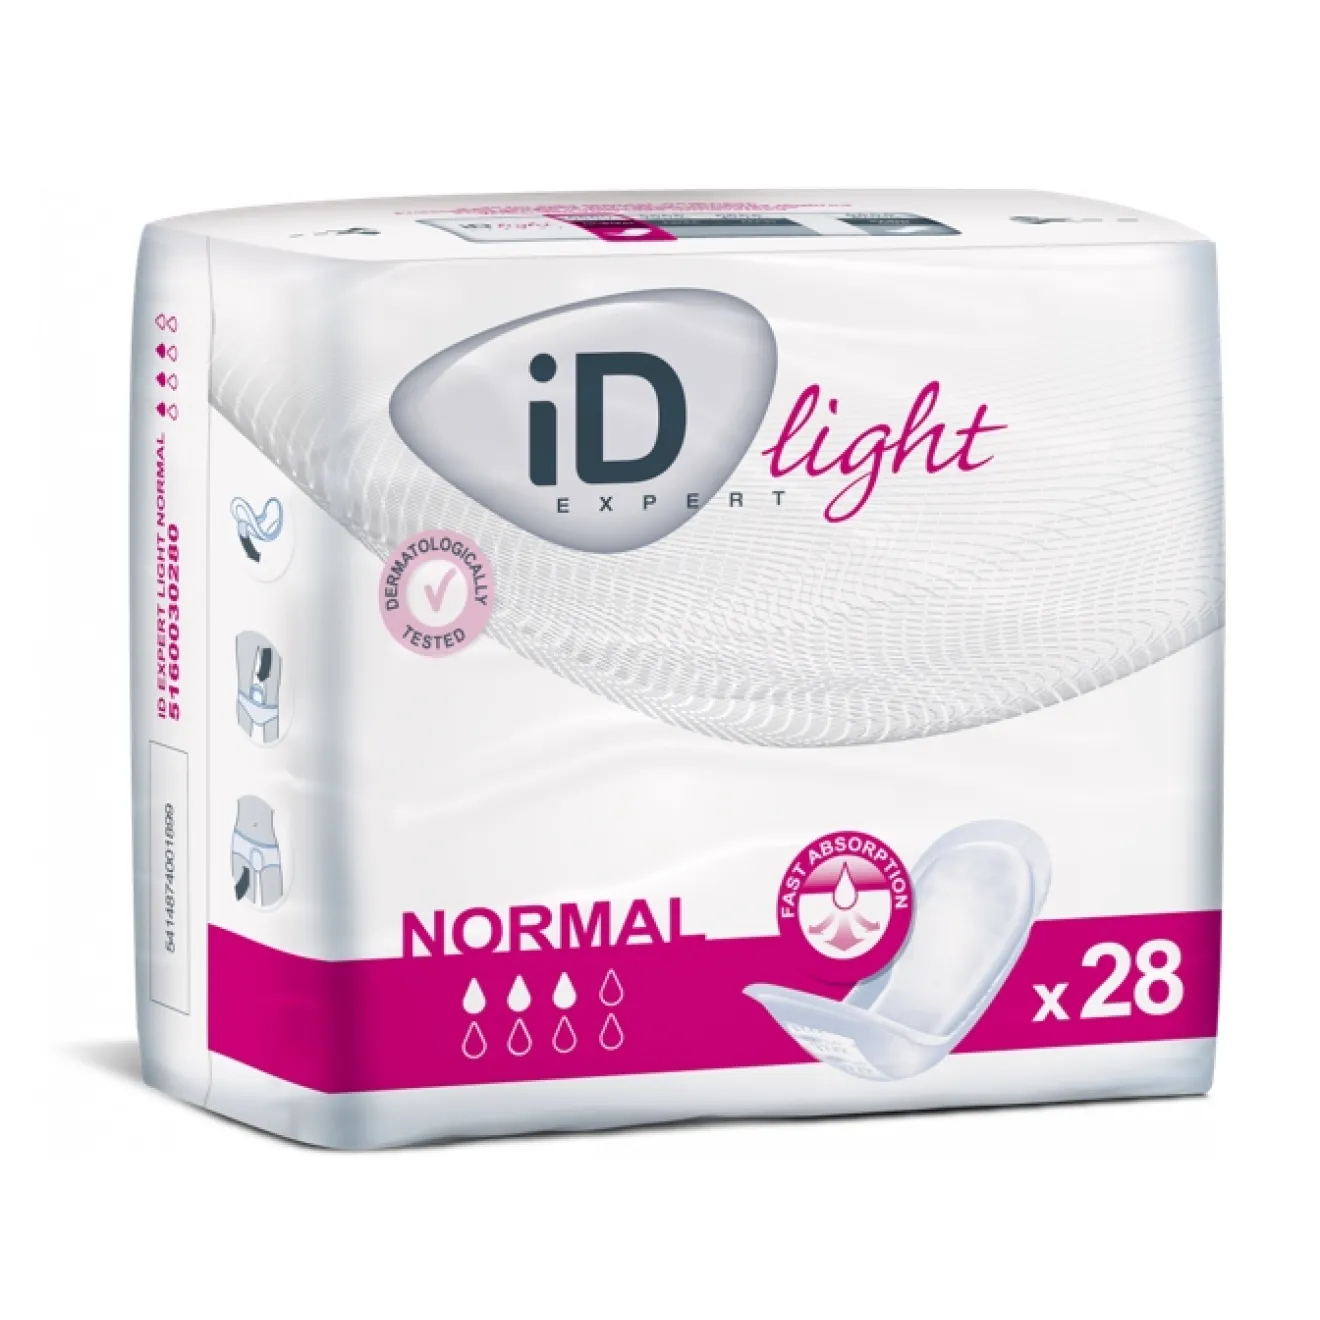 ID Expert light normal 12x28 ST